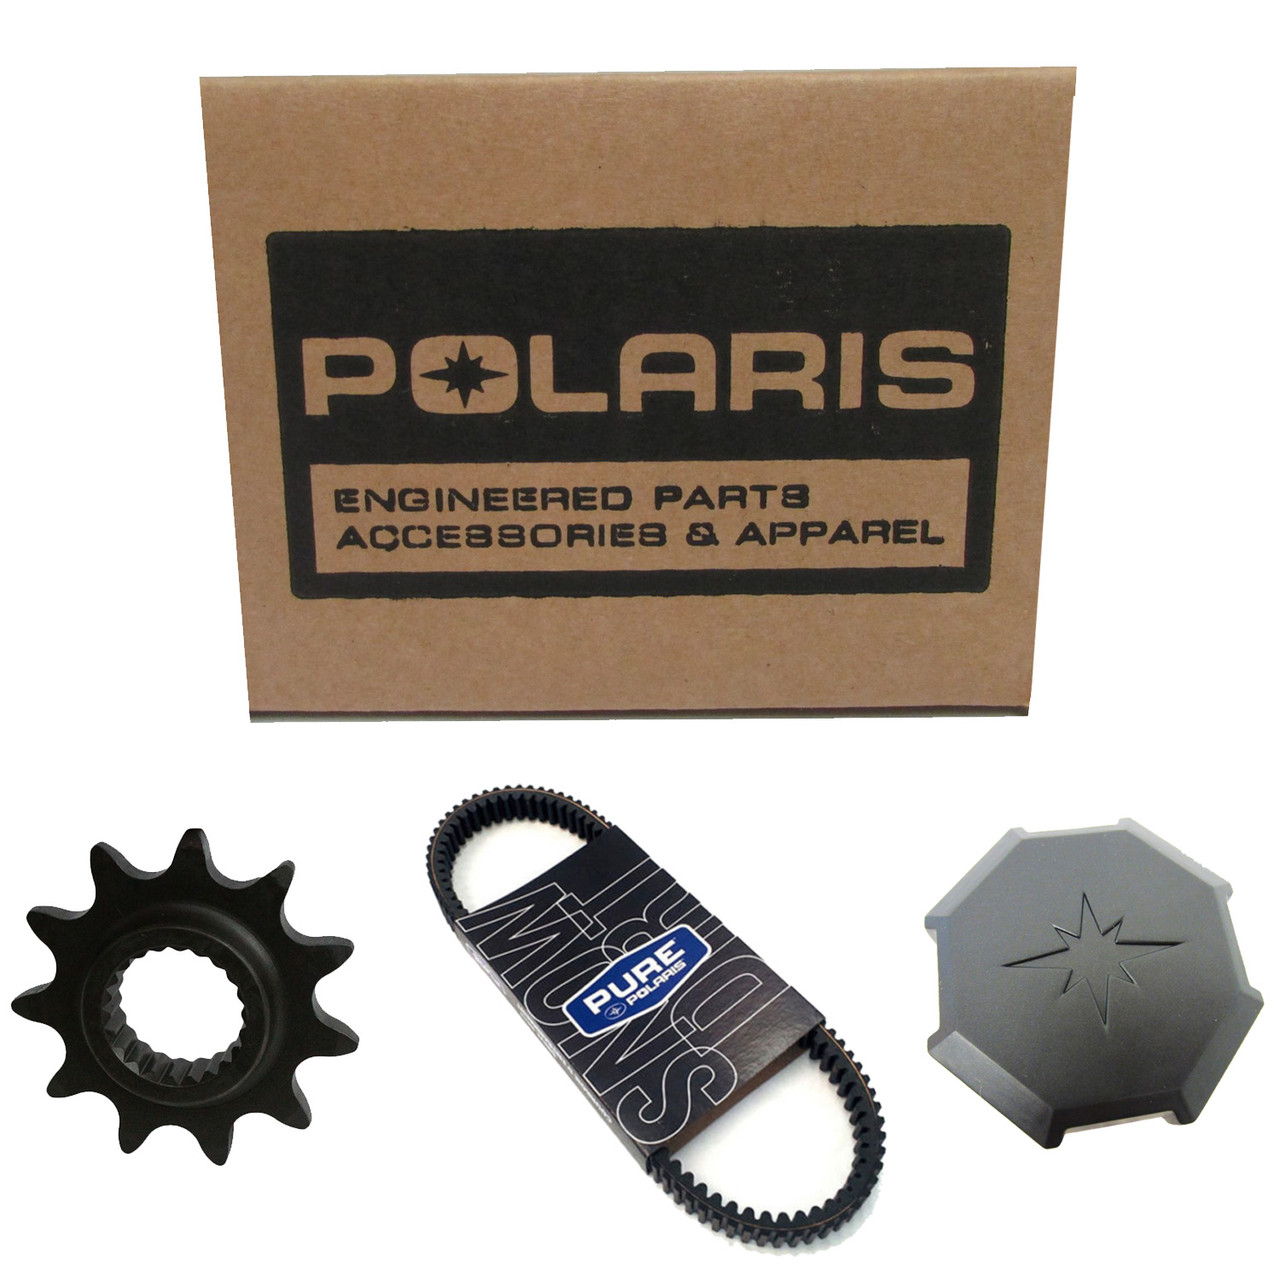 Polaris New OEM Man-Own, 19 Rzr Xp 1000, 9929841